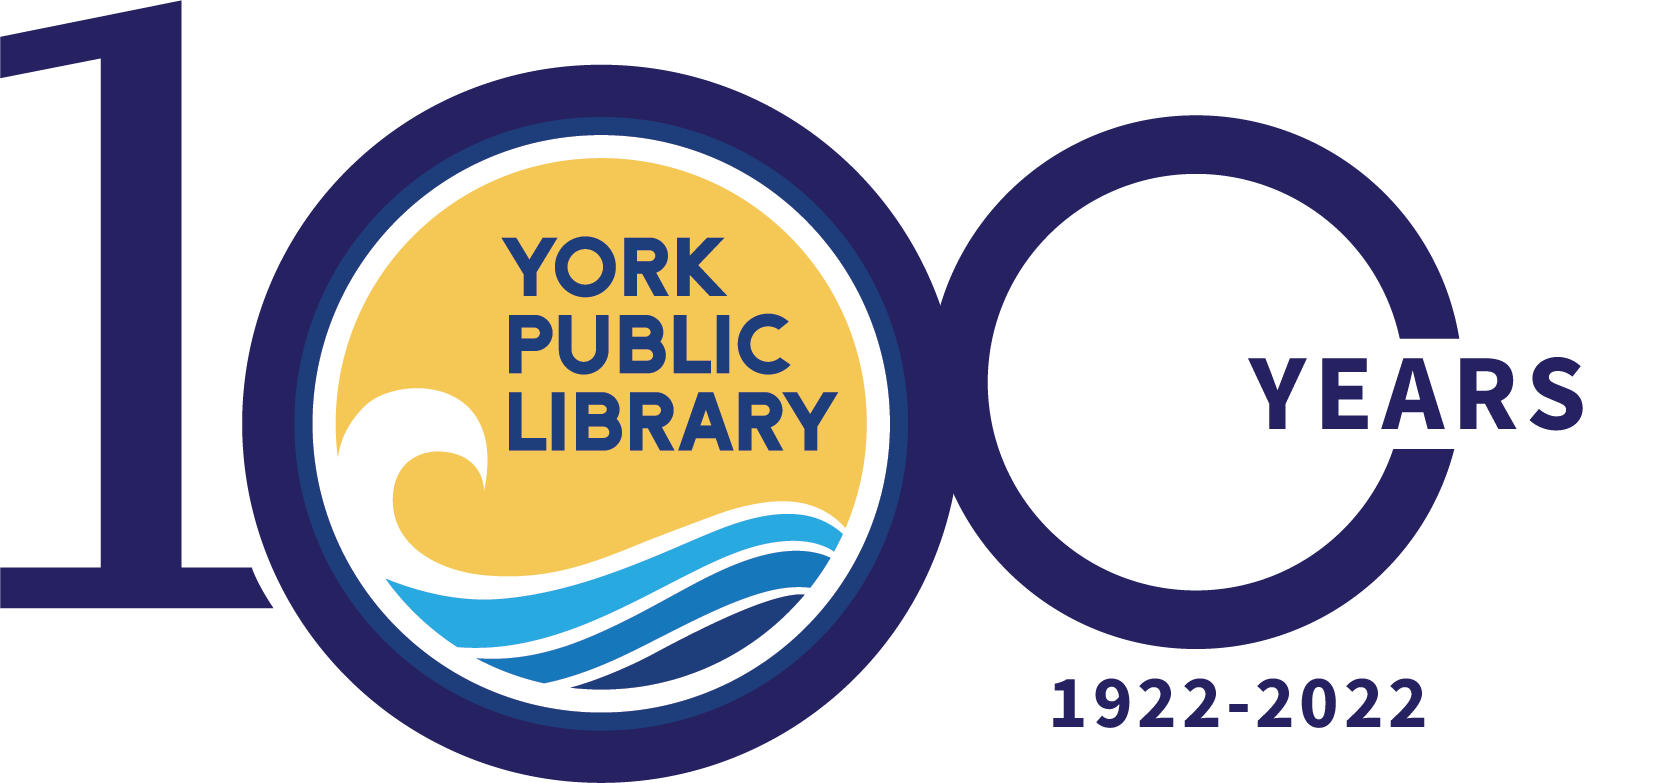 York Public Library Centennial Celebration